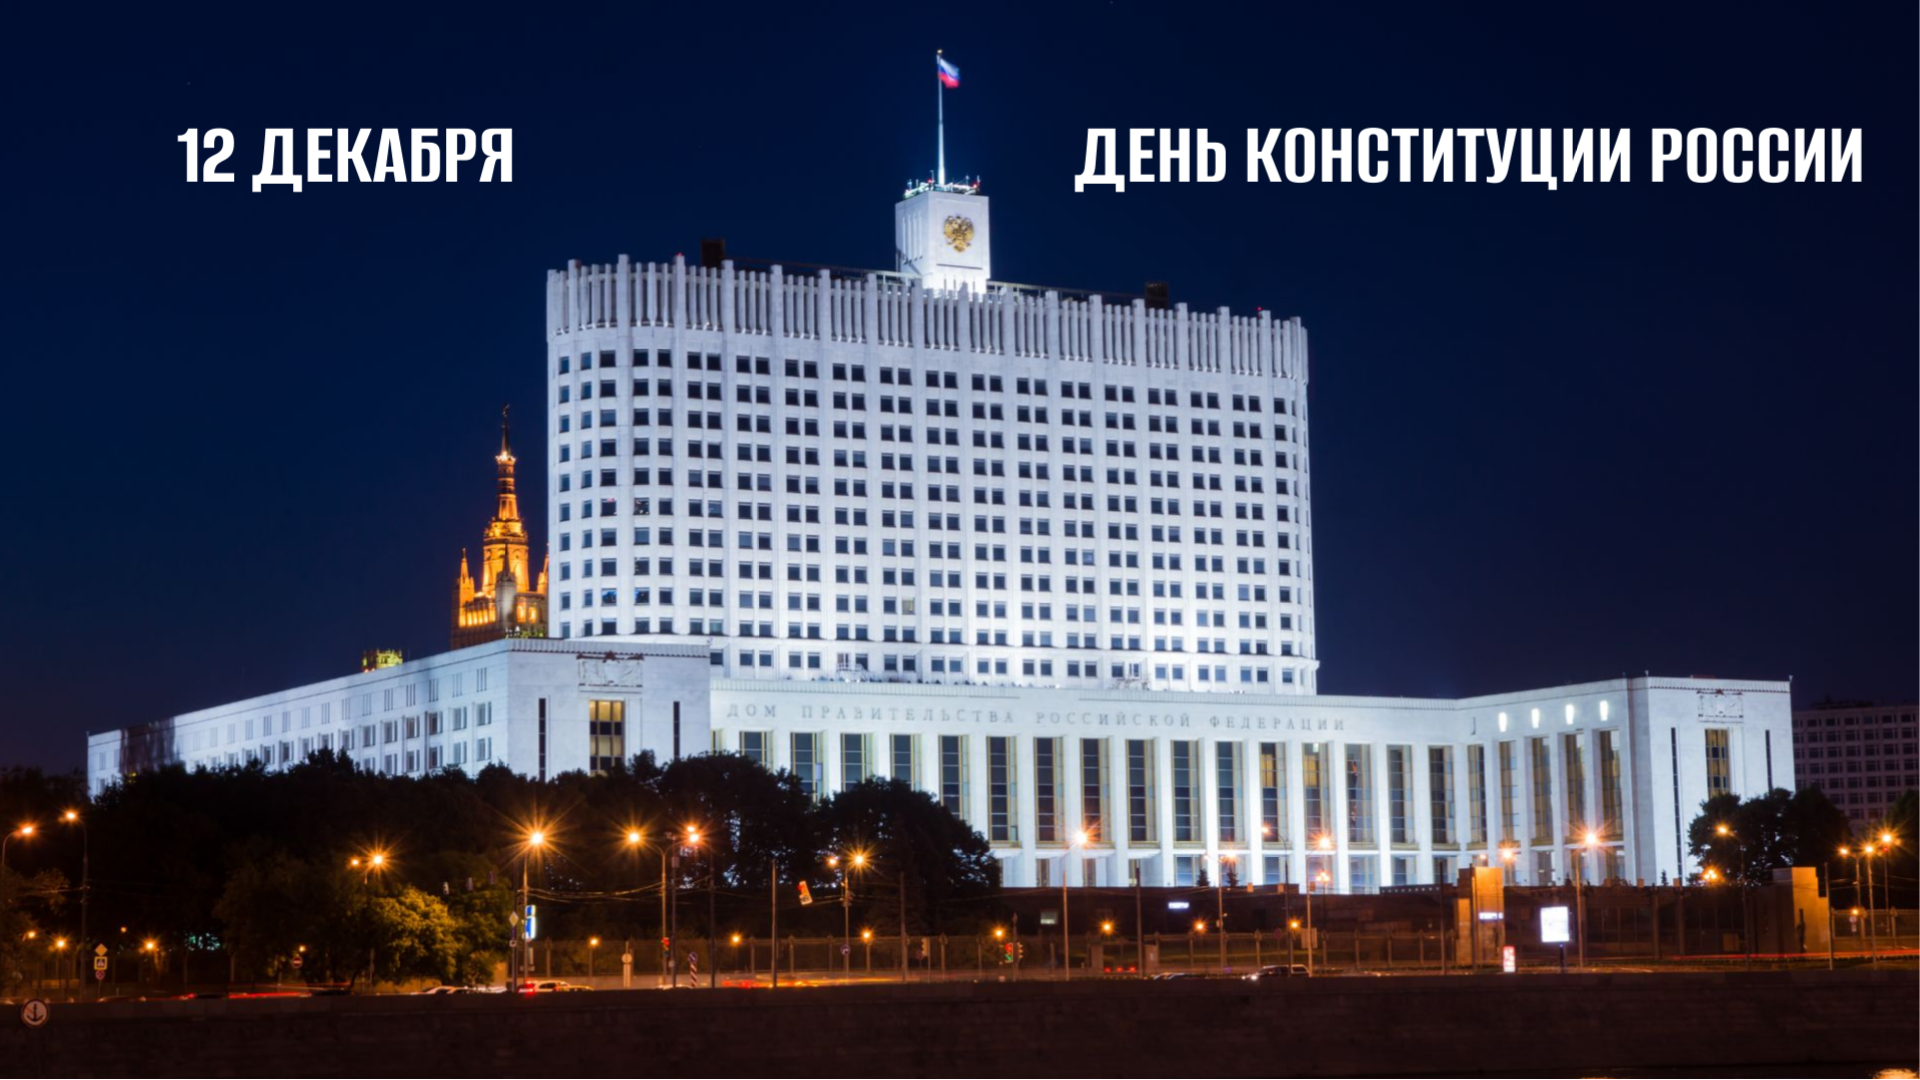 В КГУ пройдет Всероссийская конференция, посвященная 30-летию Конституции России